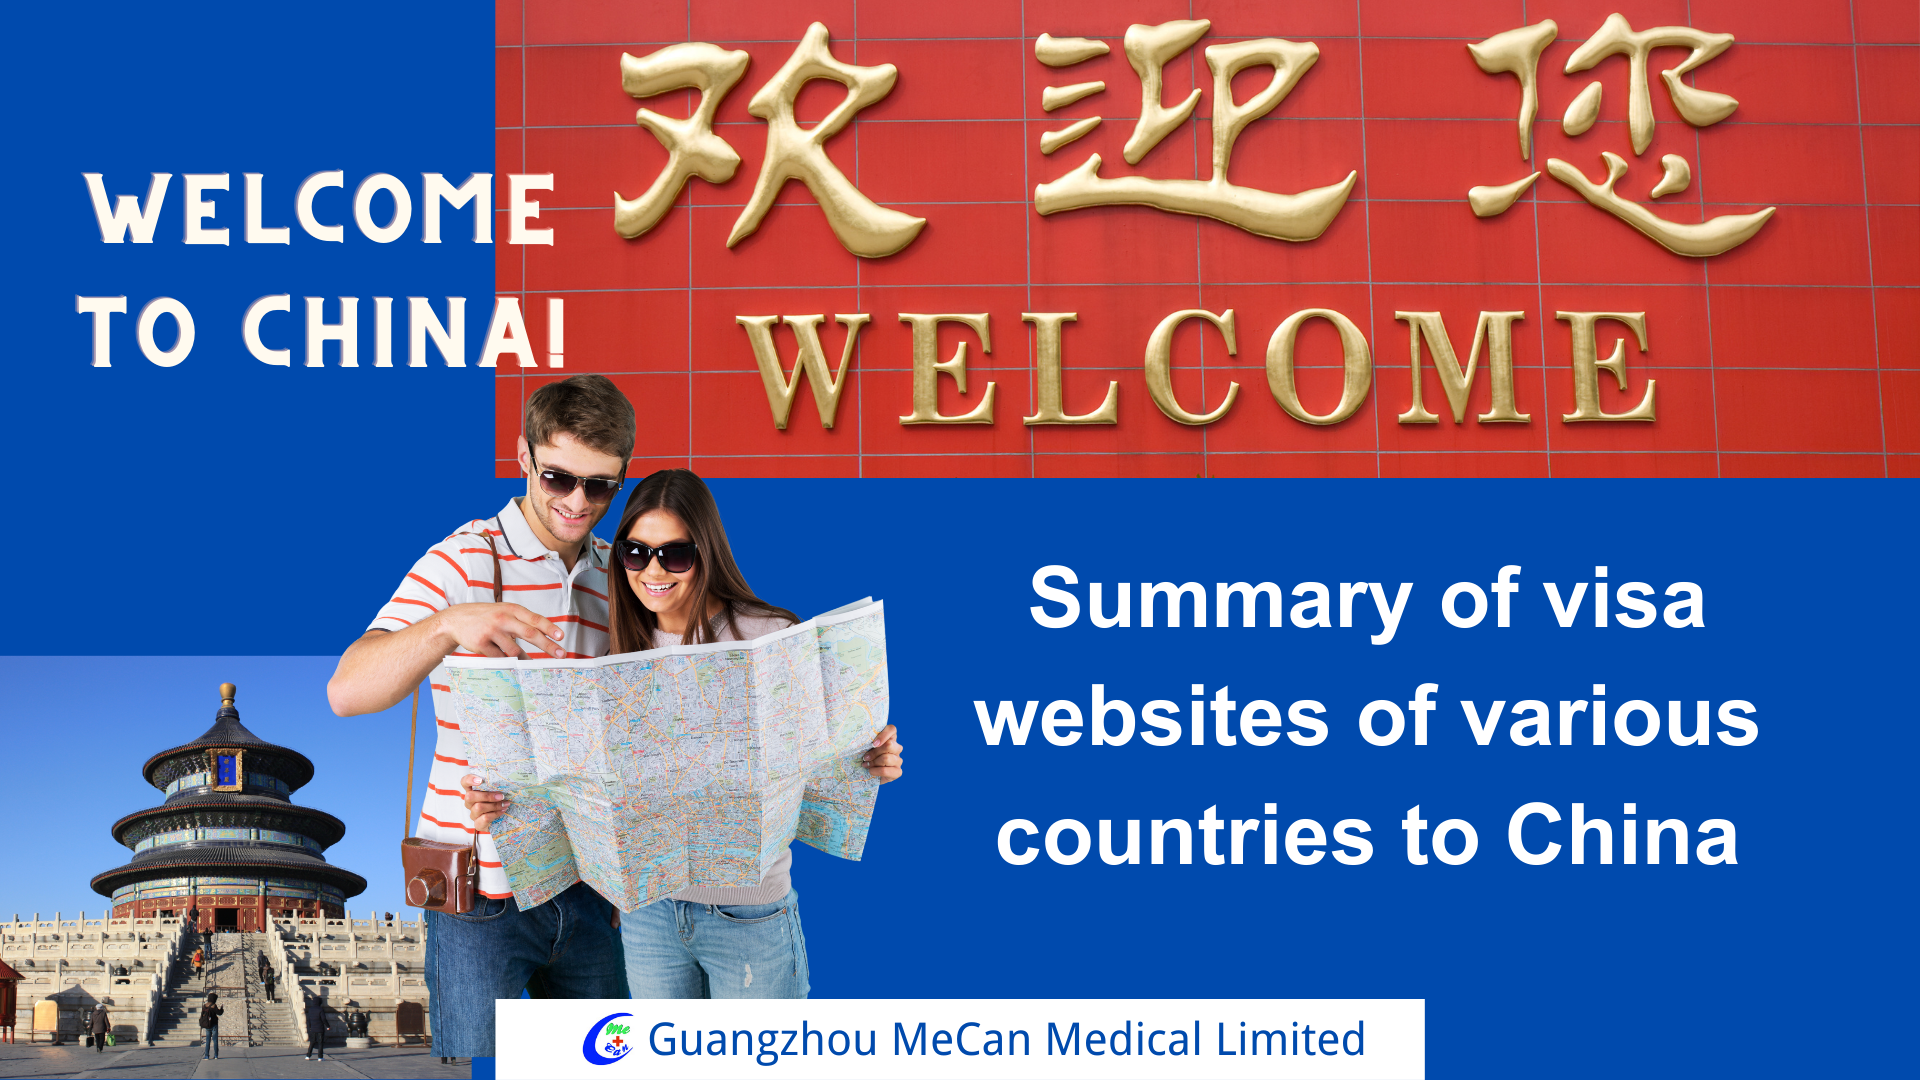 चीनमध्ये आपले स्वागत आहे --- चीनच्या विविध देशांच्या व्हिसा वेबसाइट्सचा सारांश